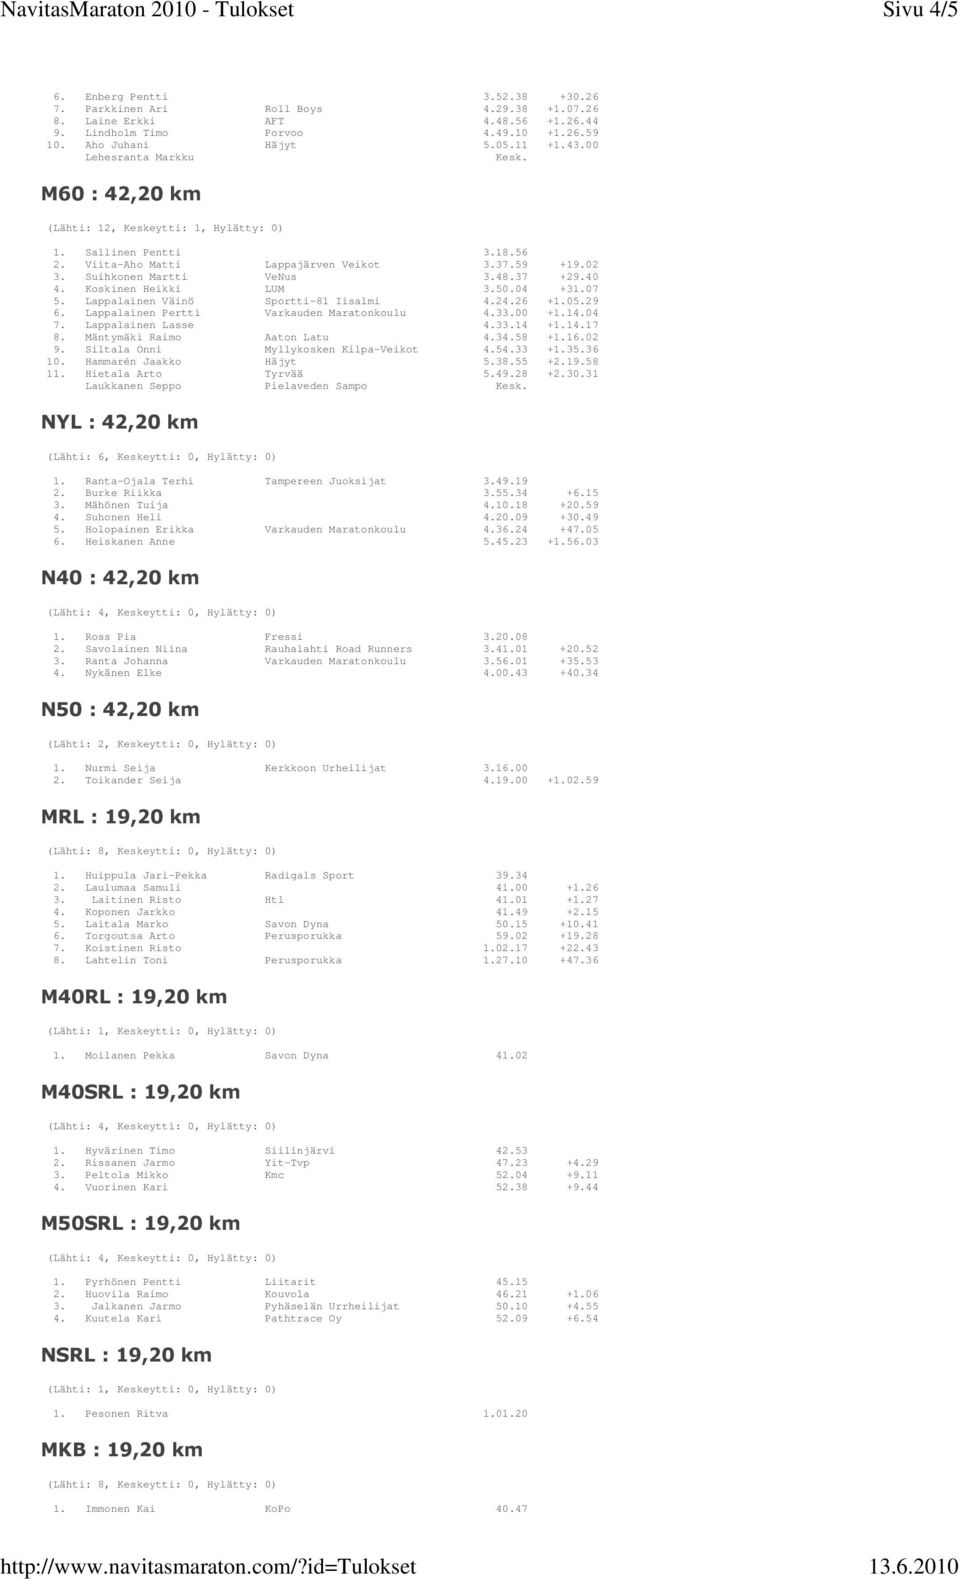 40 4. Koskinen Heikki LUM 3.50.04 +31.07 5. Lappalainen Väinö Sportti-81 Iisalmi 4.24.26 +1.05.29 6. Lappalainen Pertti Varkauden Maratonkoulu 4.33.00 +1.14.04 7. Lappalainen Lasse 4.33.14 +1.14.17 8.